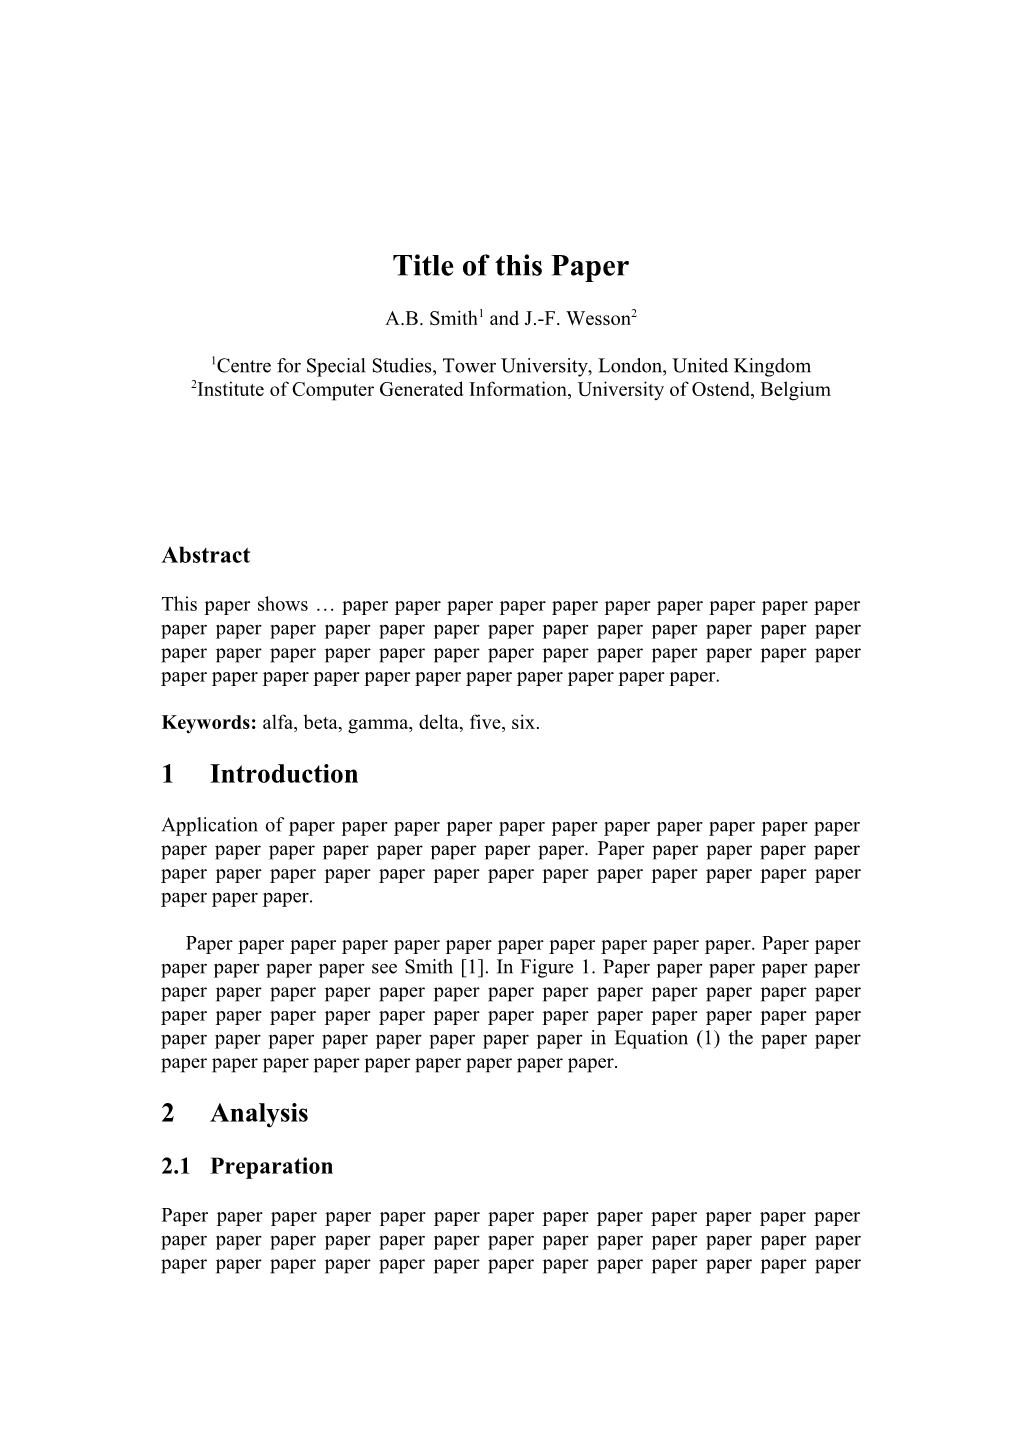 Paper Paper Paper Paper Paper Paper Paper Paper Paper Paper Paper Paper Paper Paper Paper